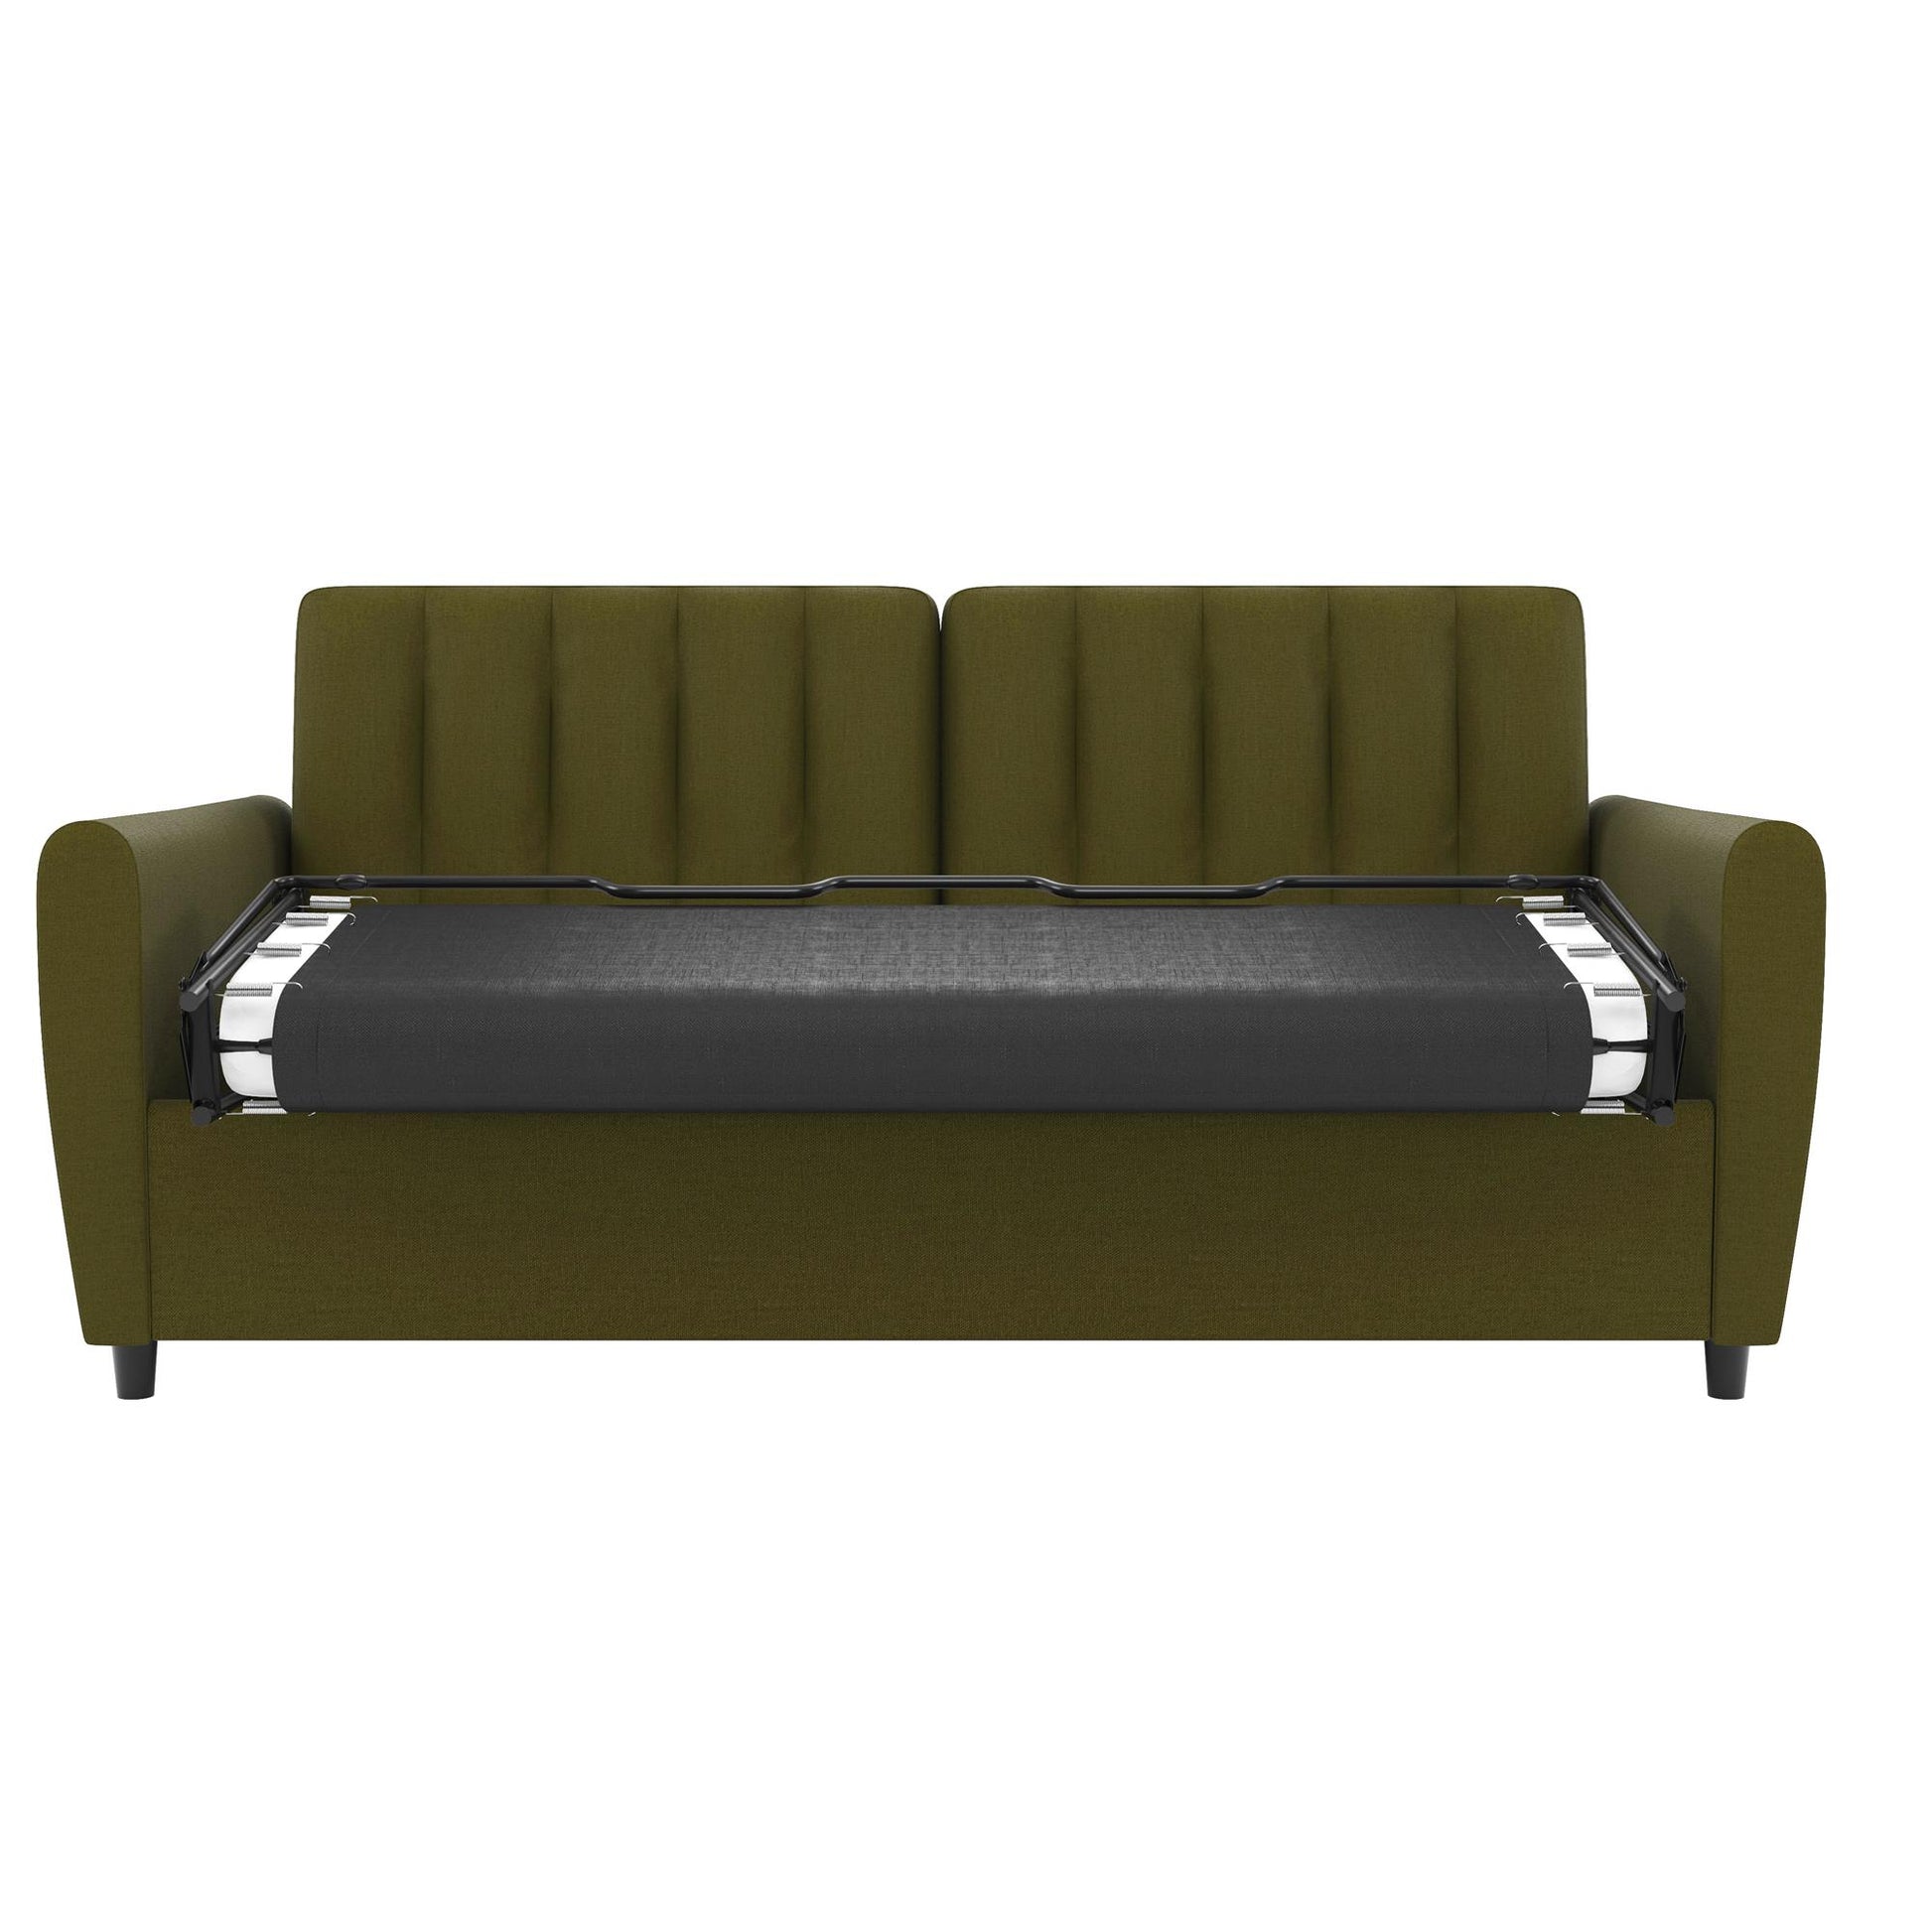 Novogratz Brittany Sleeper Sofa with Memory Foam Mattress, Queen, Green Linen - Green - Queen